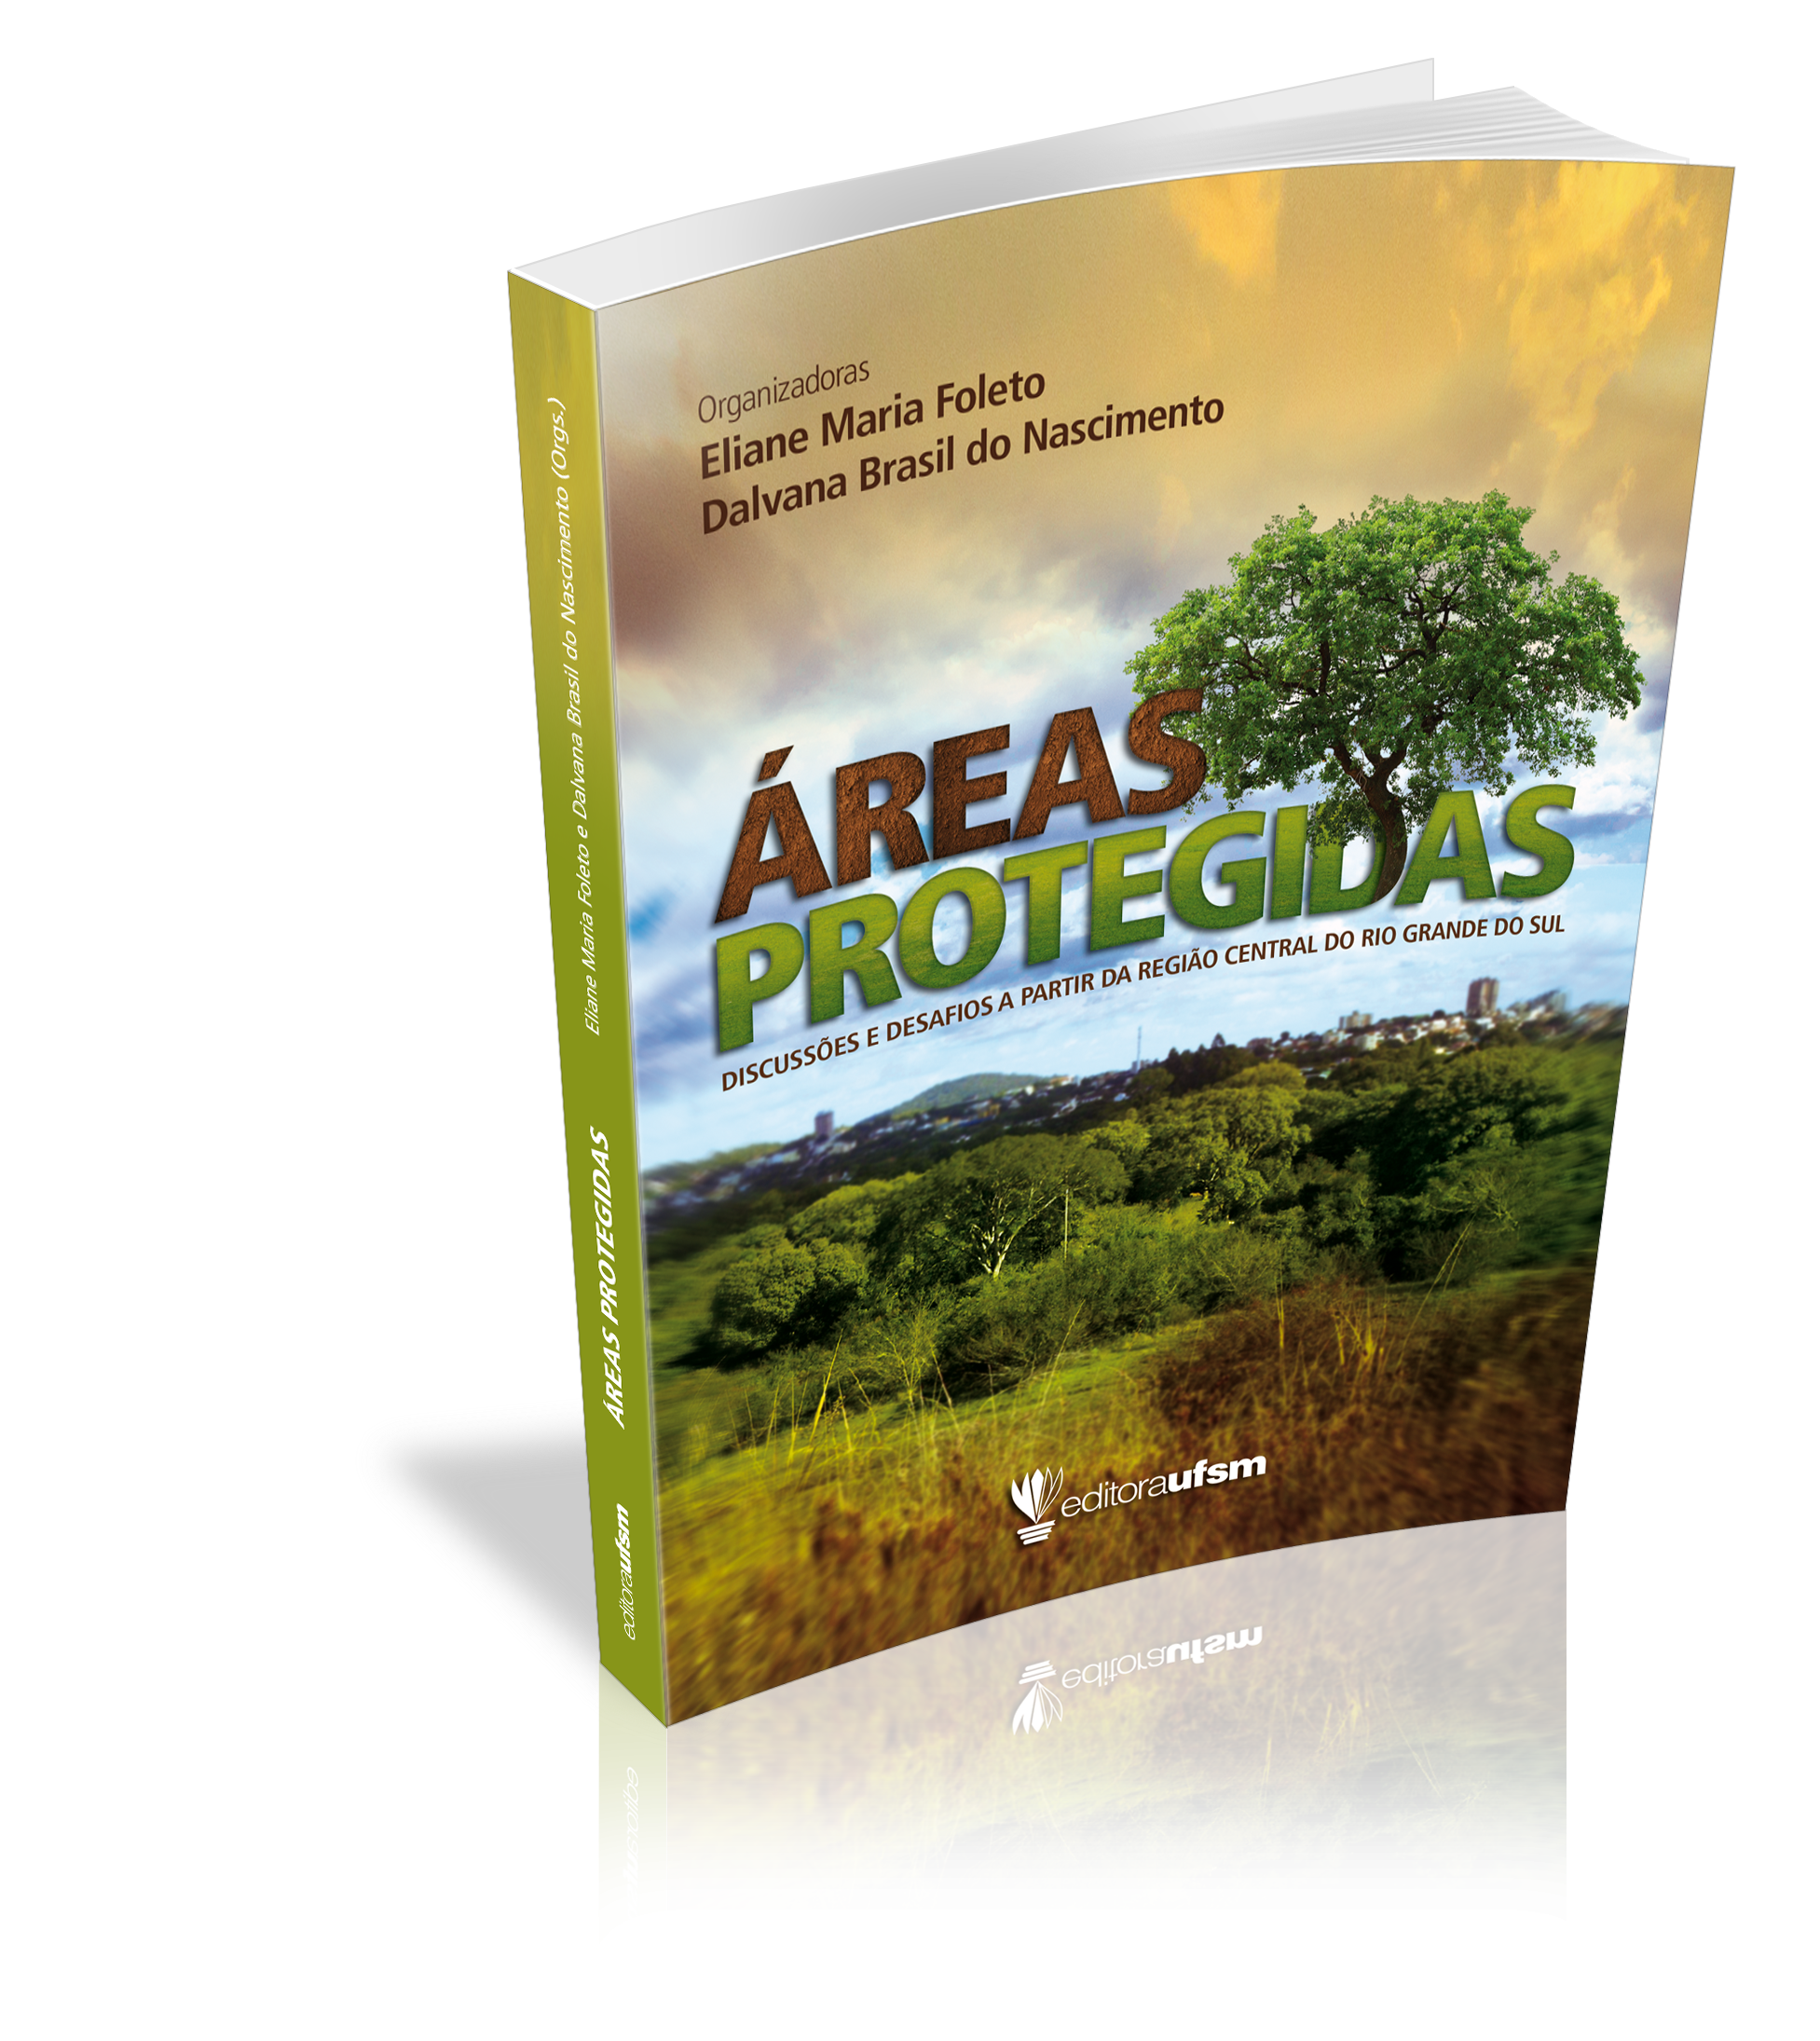 Capa do livro Áreas Protegidas: discussões e desafios a partir da região central do Rio Grande do Sul